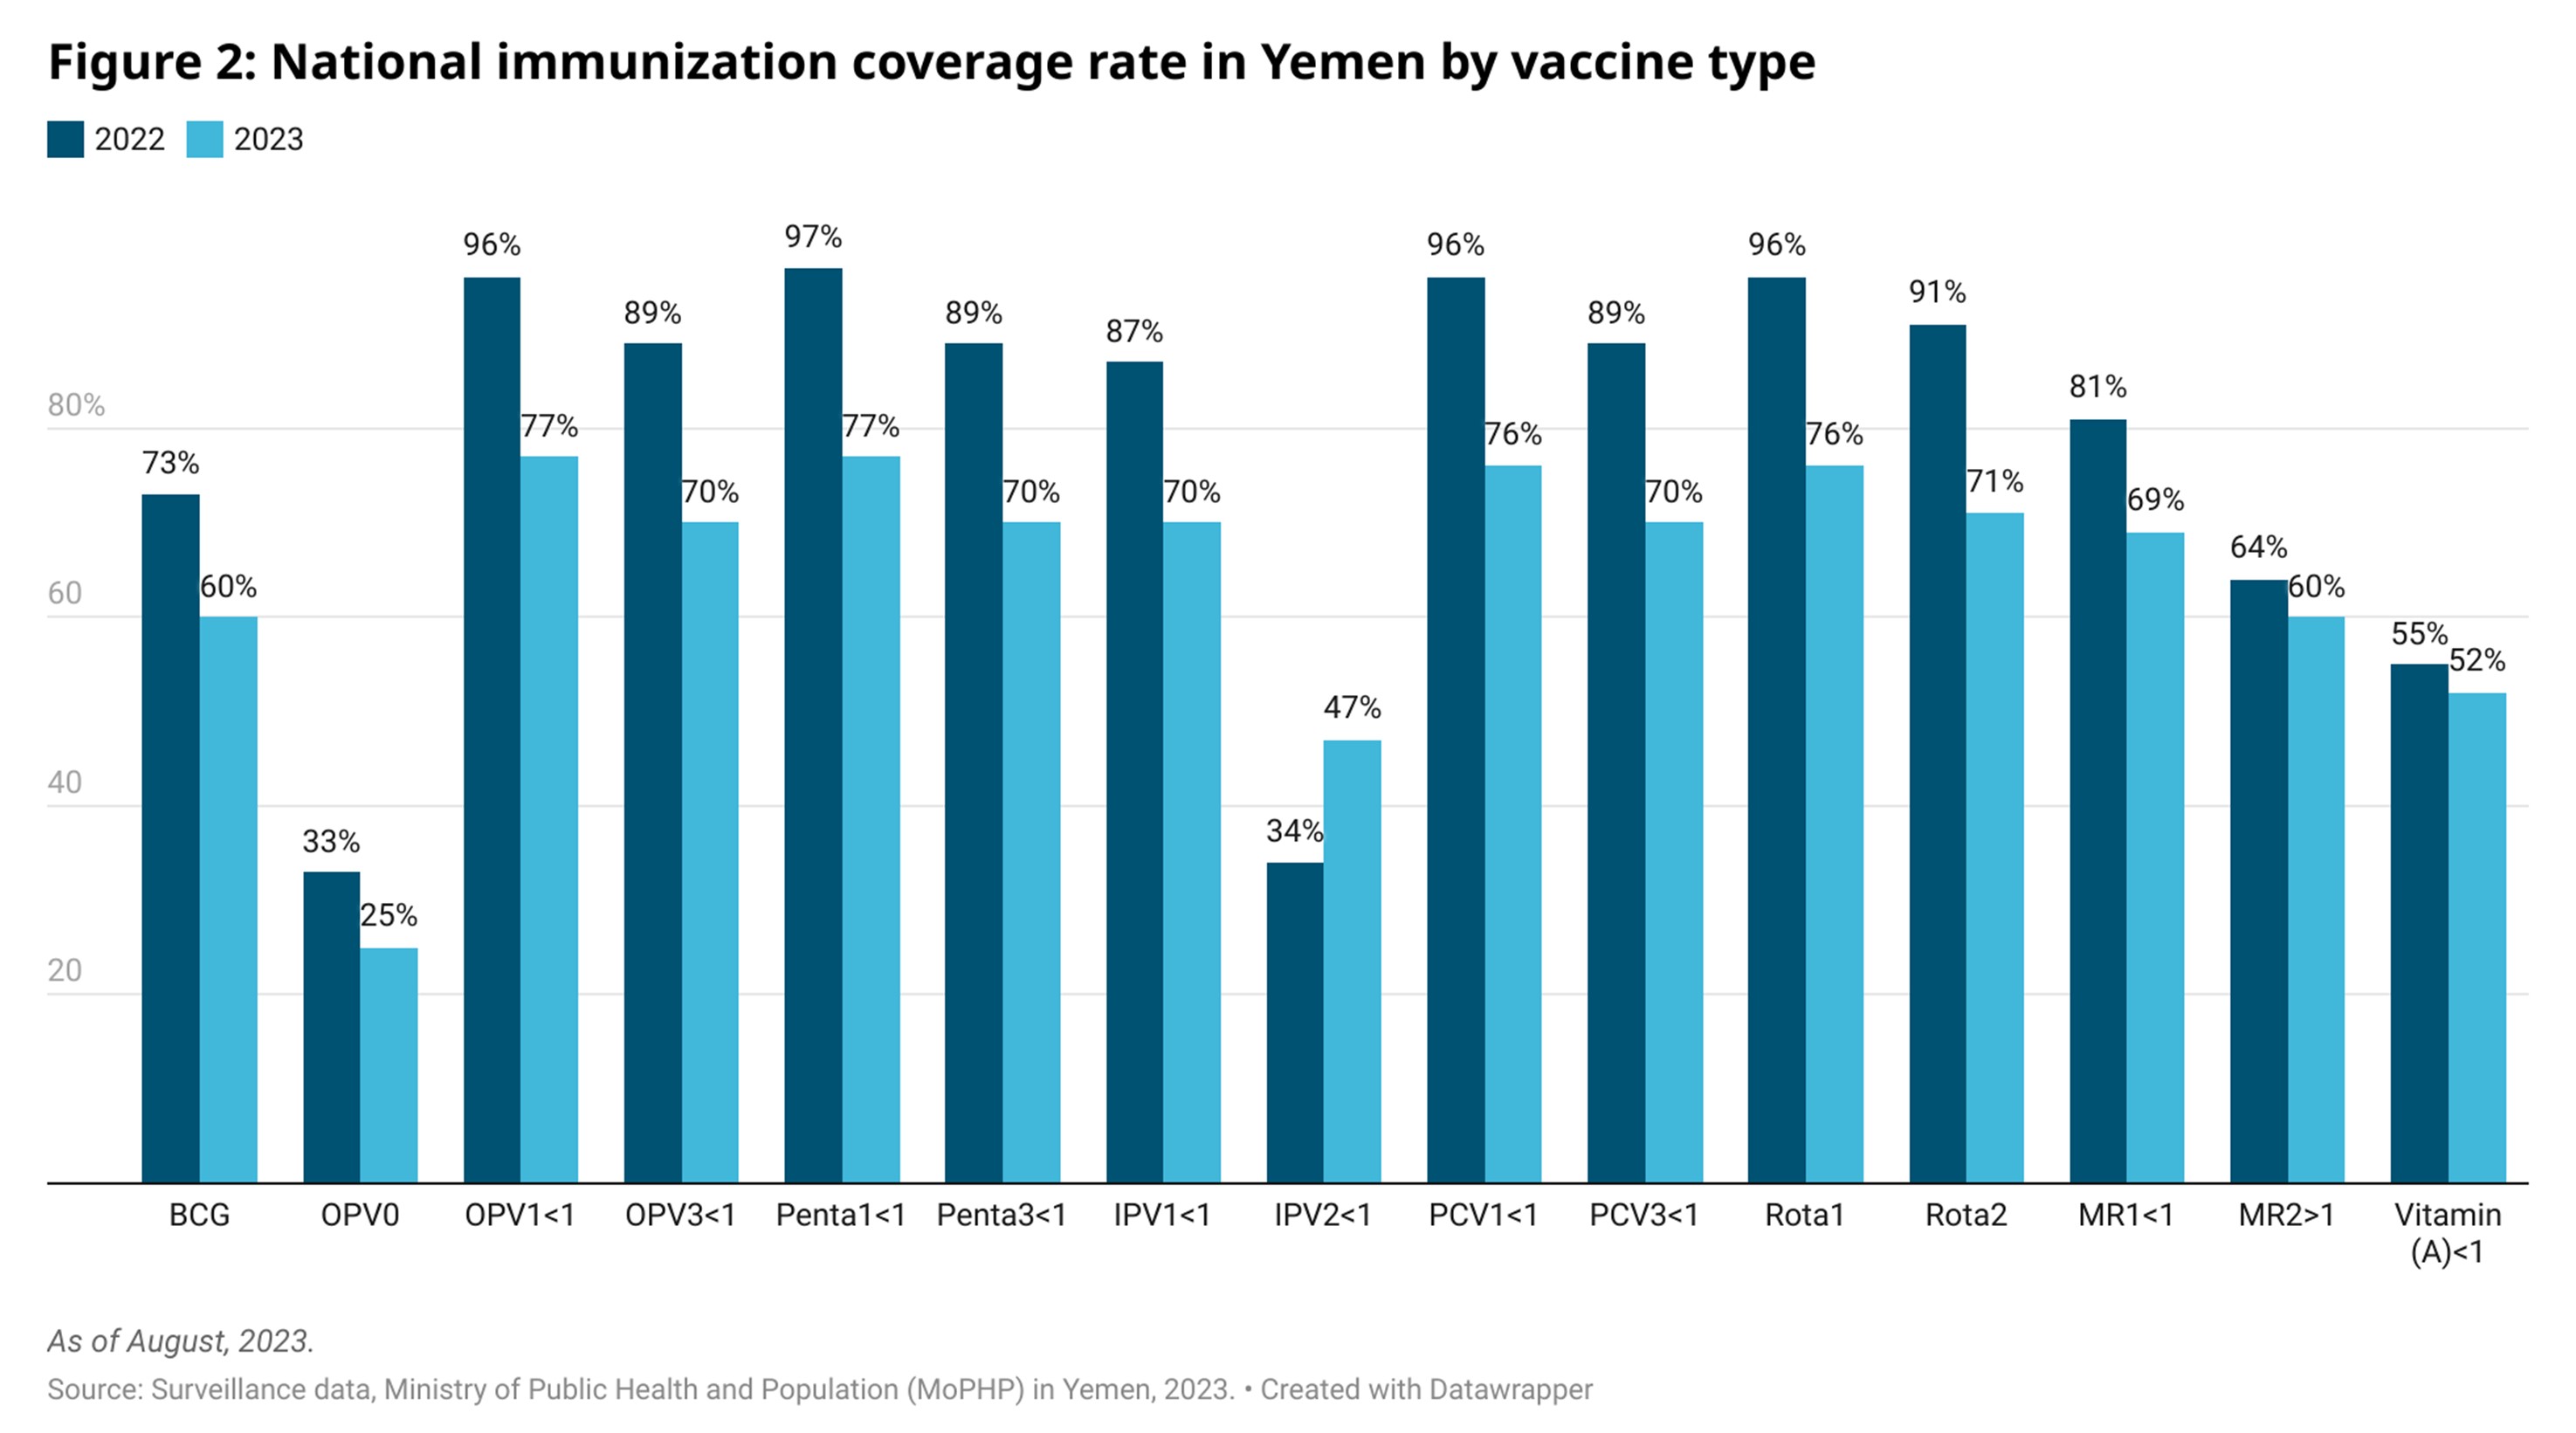 Number of suspected vaccine preventable diseases in Yemen